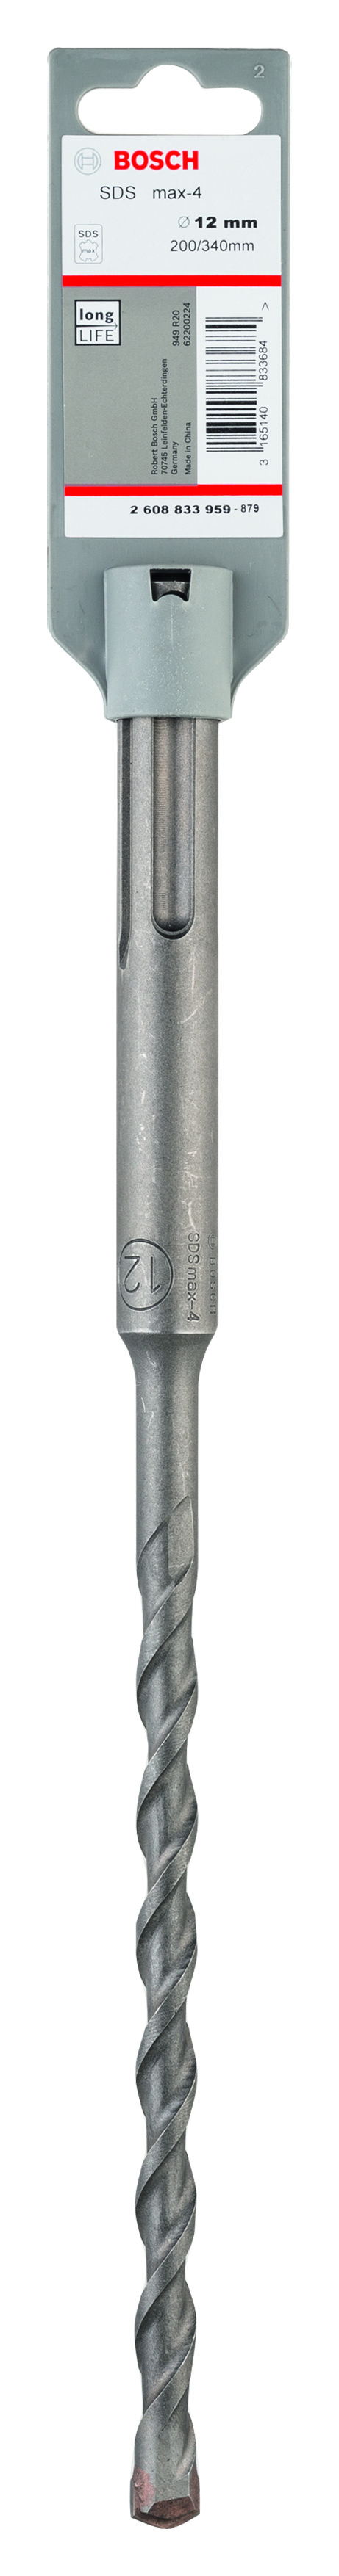 Bosch SDS-Max-4 Hammer Drill Bit 12mm x 200mm x 340mm